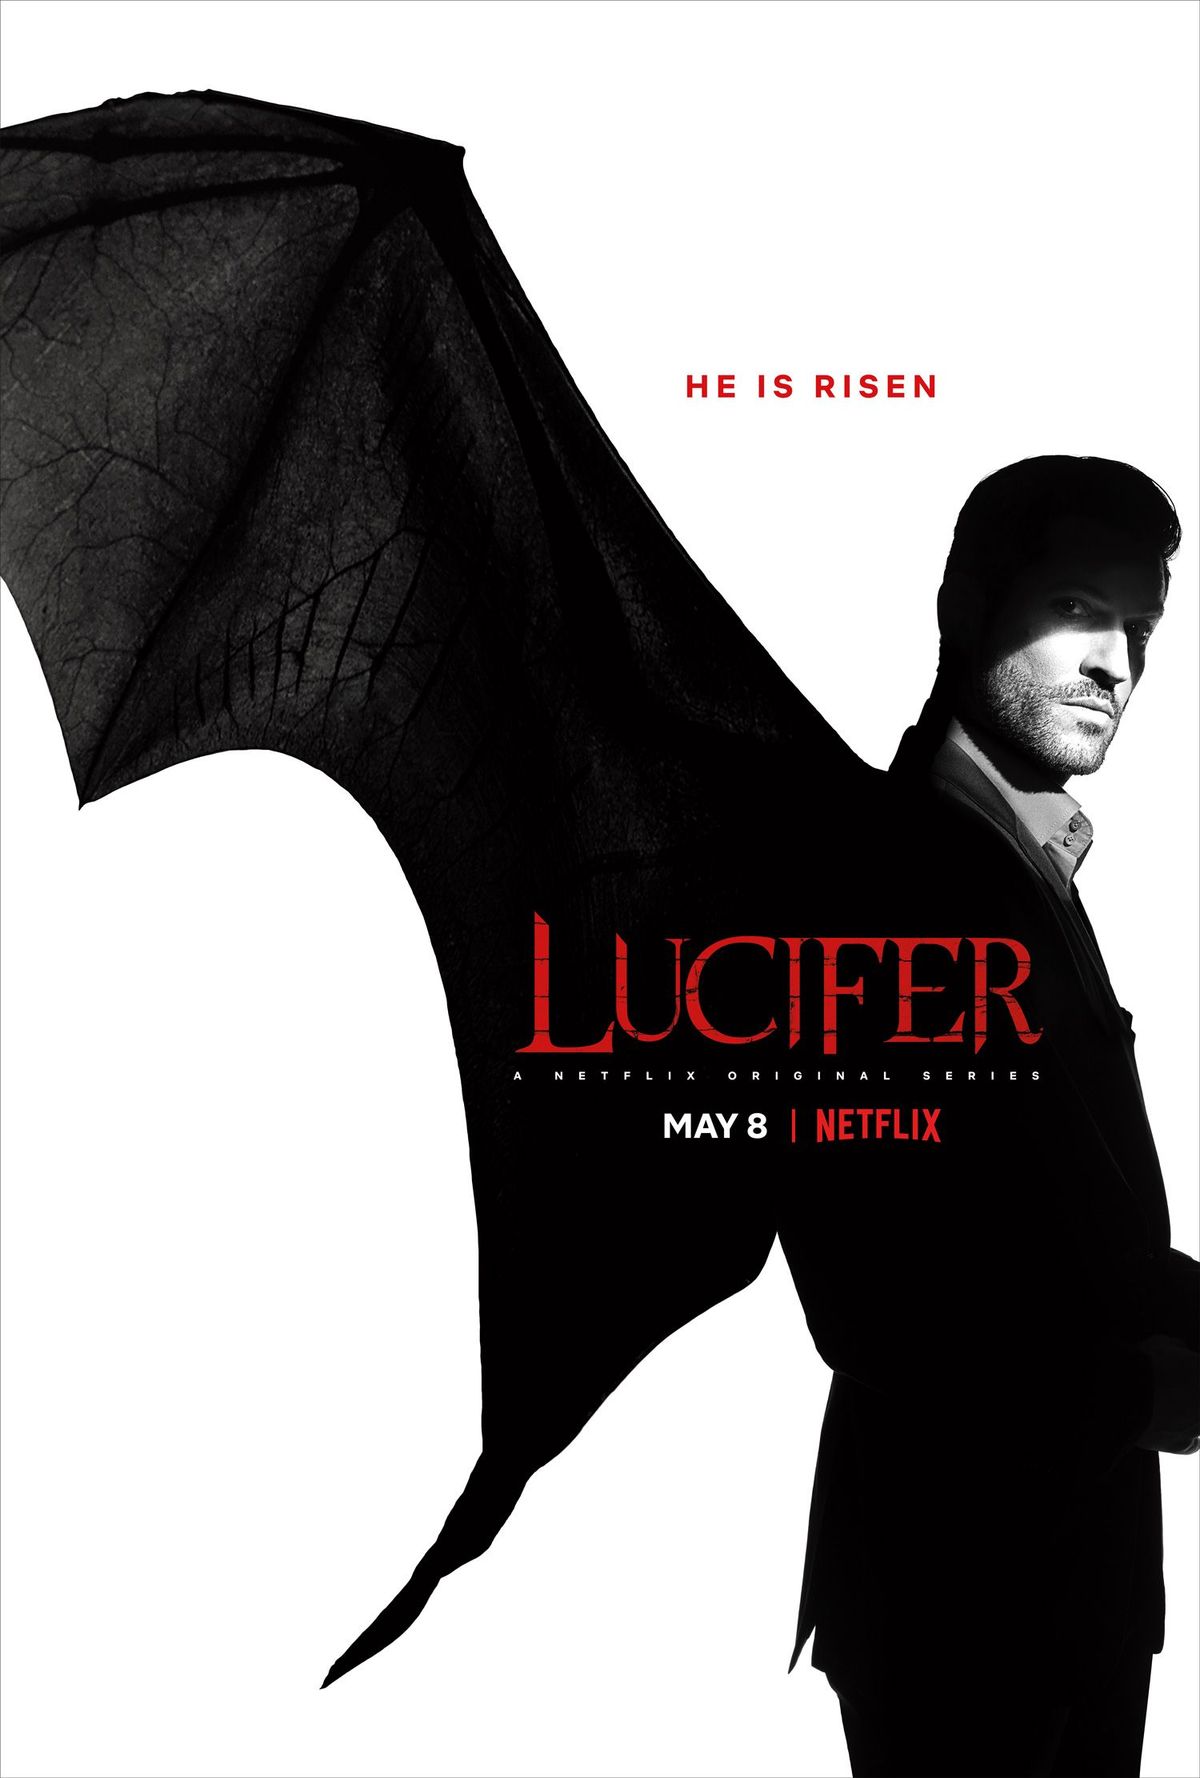 Chương trình khuyến mãi mùa 4 của Lucifer tiết lộ rất nhiều skin - và ngày phát hành